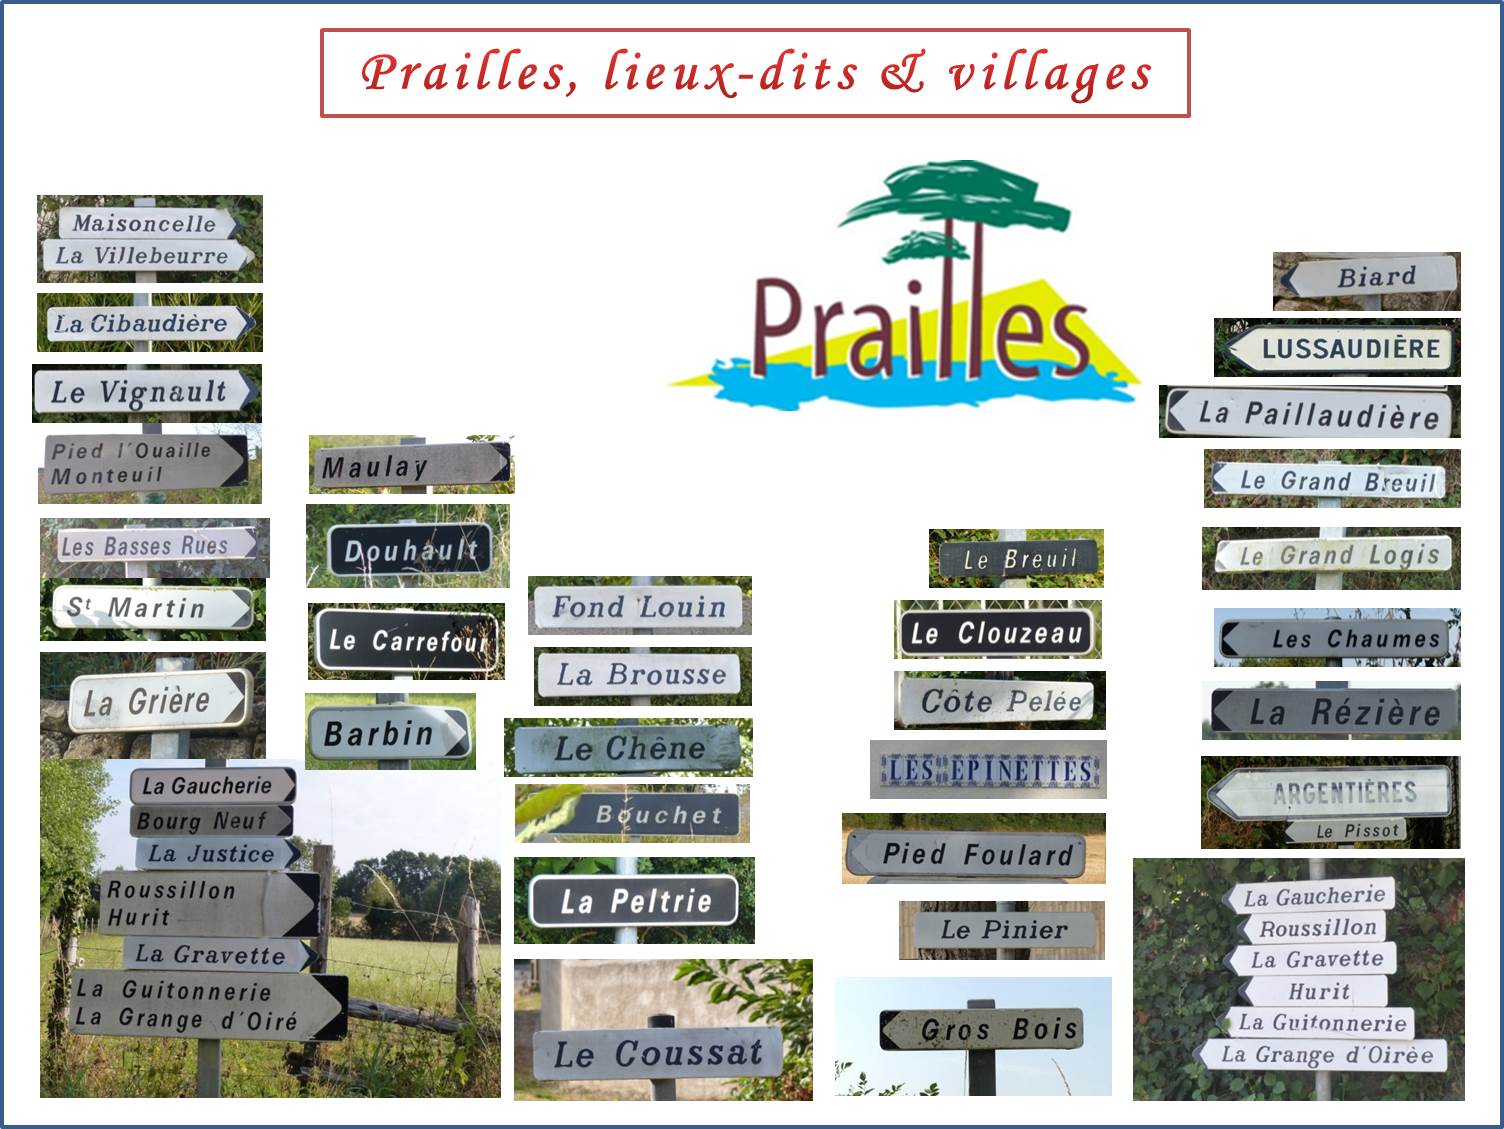 Villages et lieux dits de Prailles.jpg